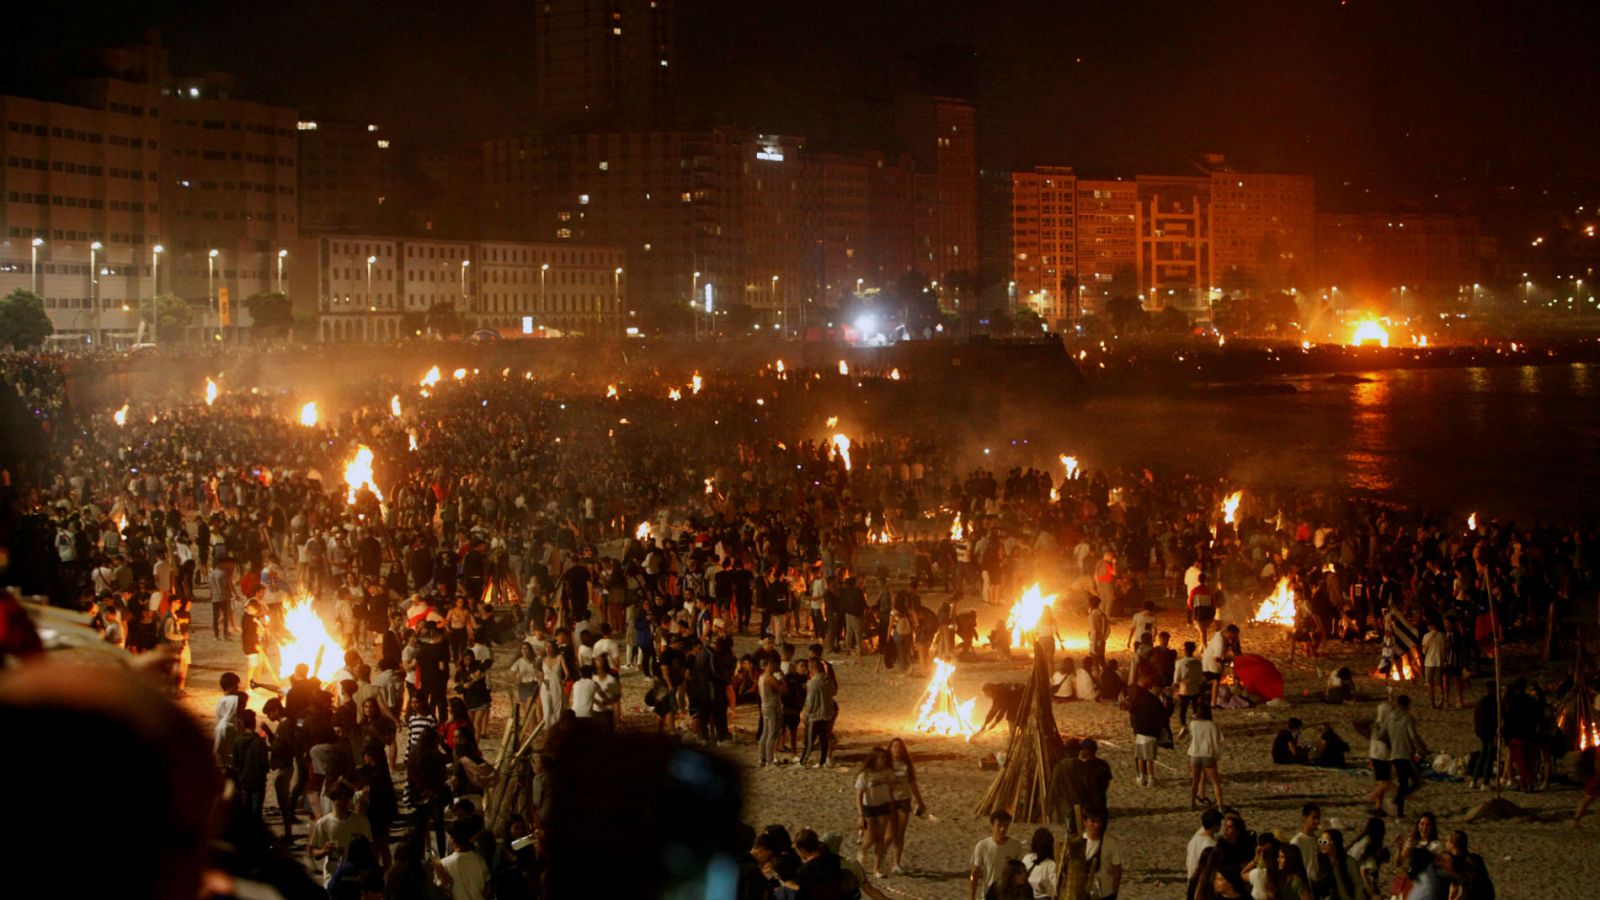 Tradiciones - España celebra la Noche de San Juan en distintas ciudades - RTVE.es